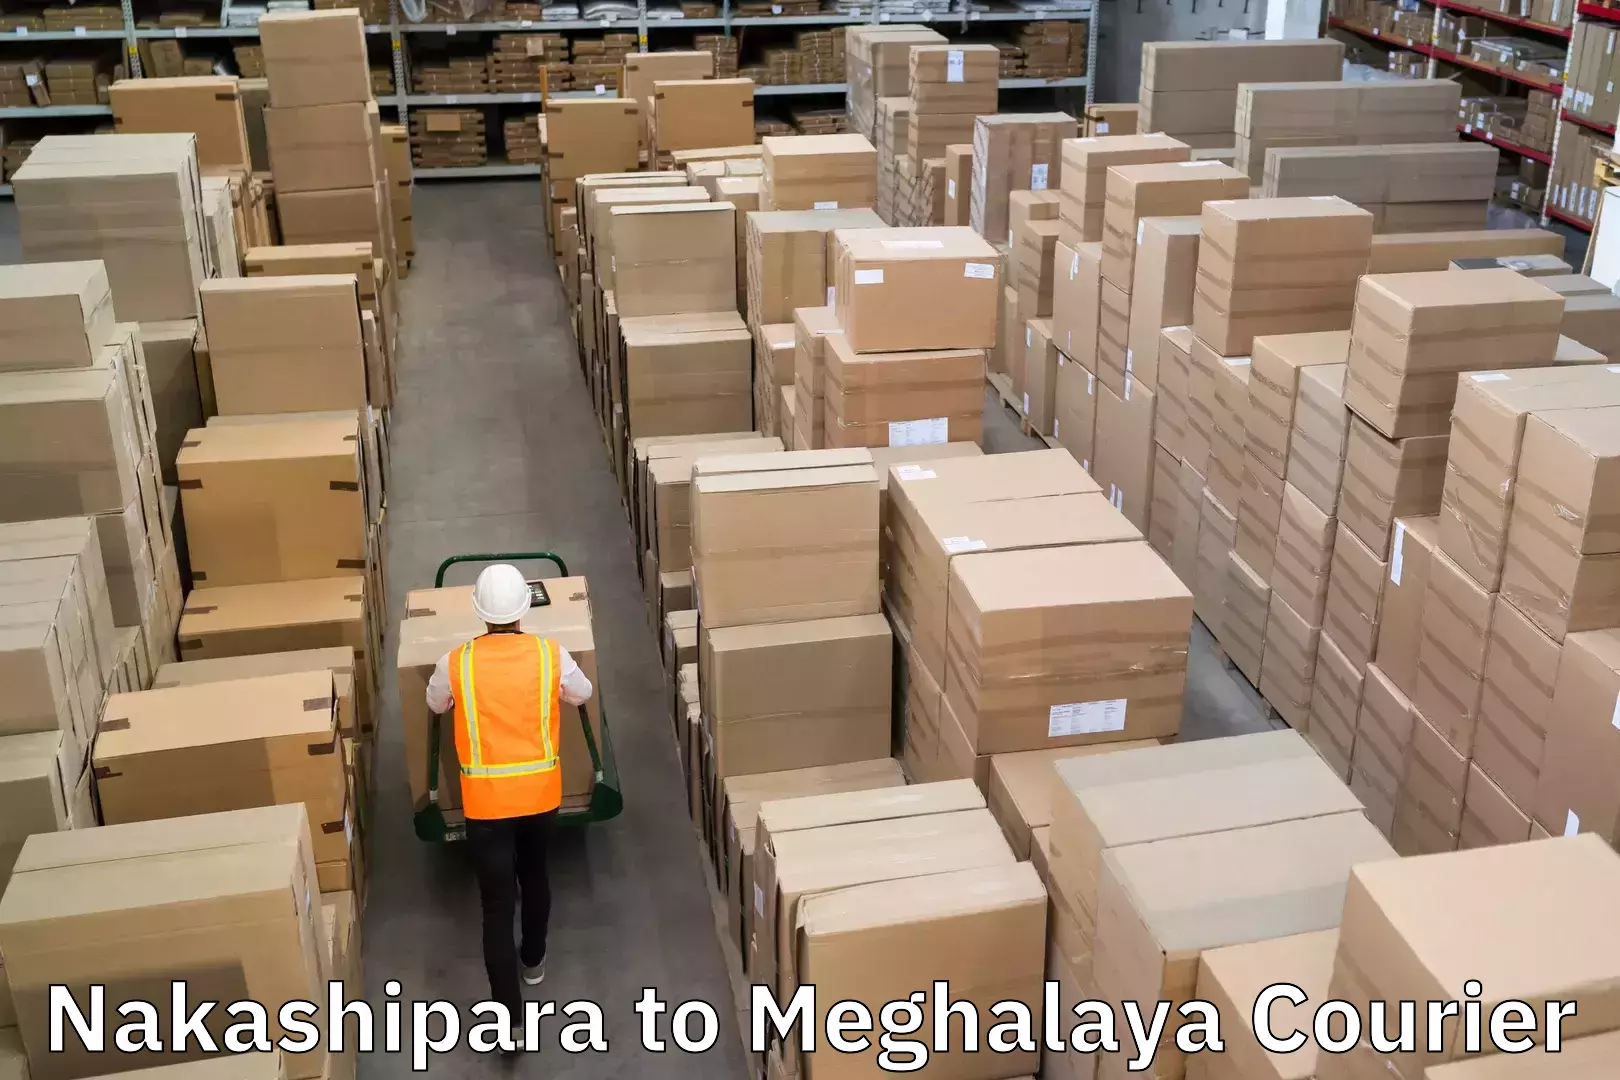 Seamless shipping experience Nakashipara to Meghalaya